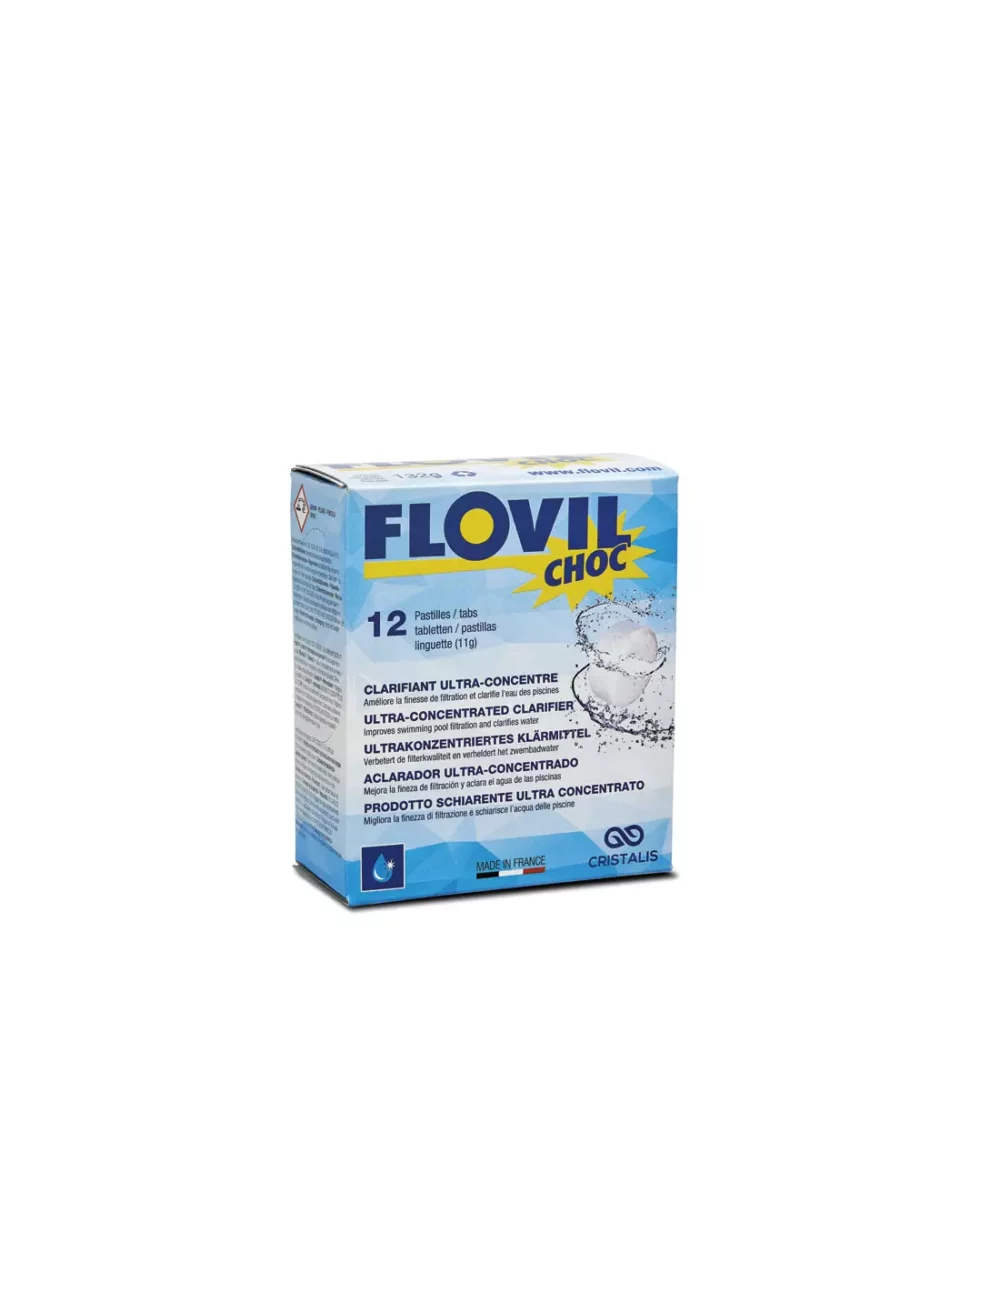 Flovil Choc - Vlokkingstabletten (12 stuks)